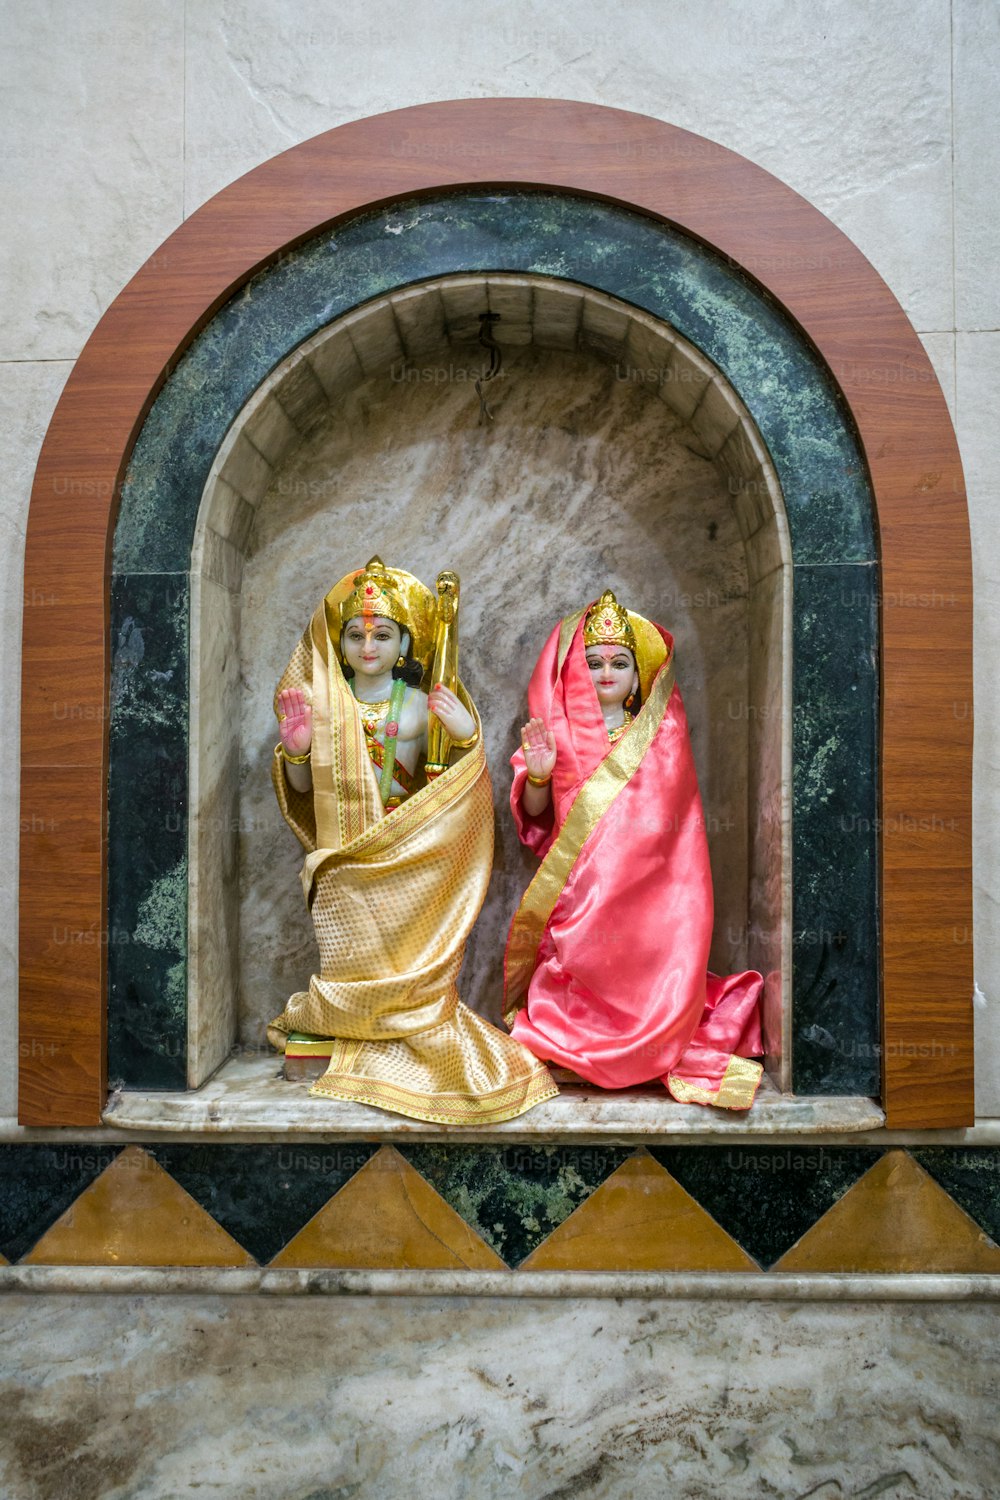 Une statue de deux femmes dans une niche